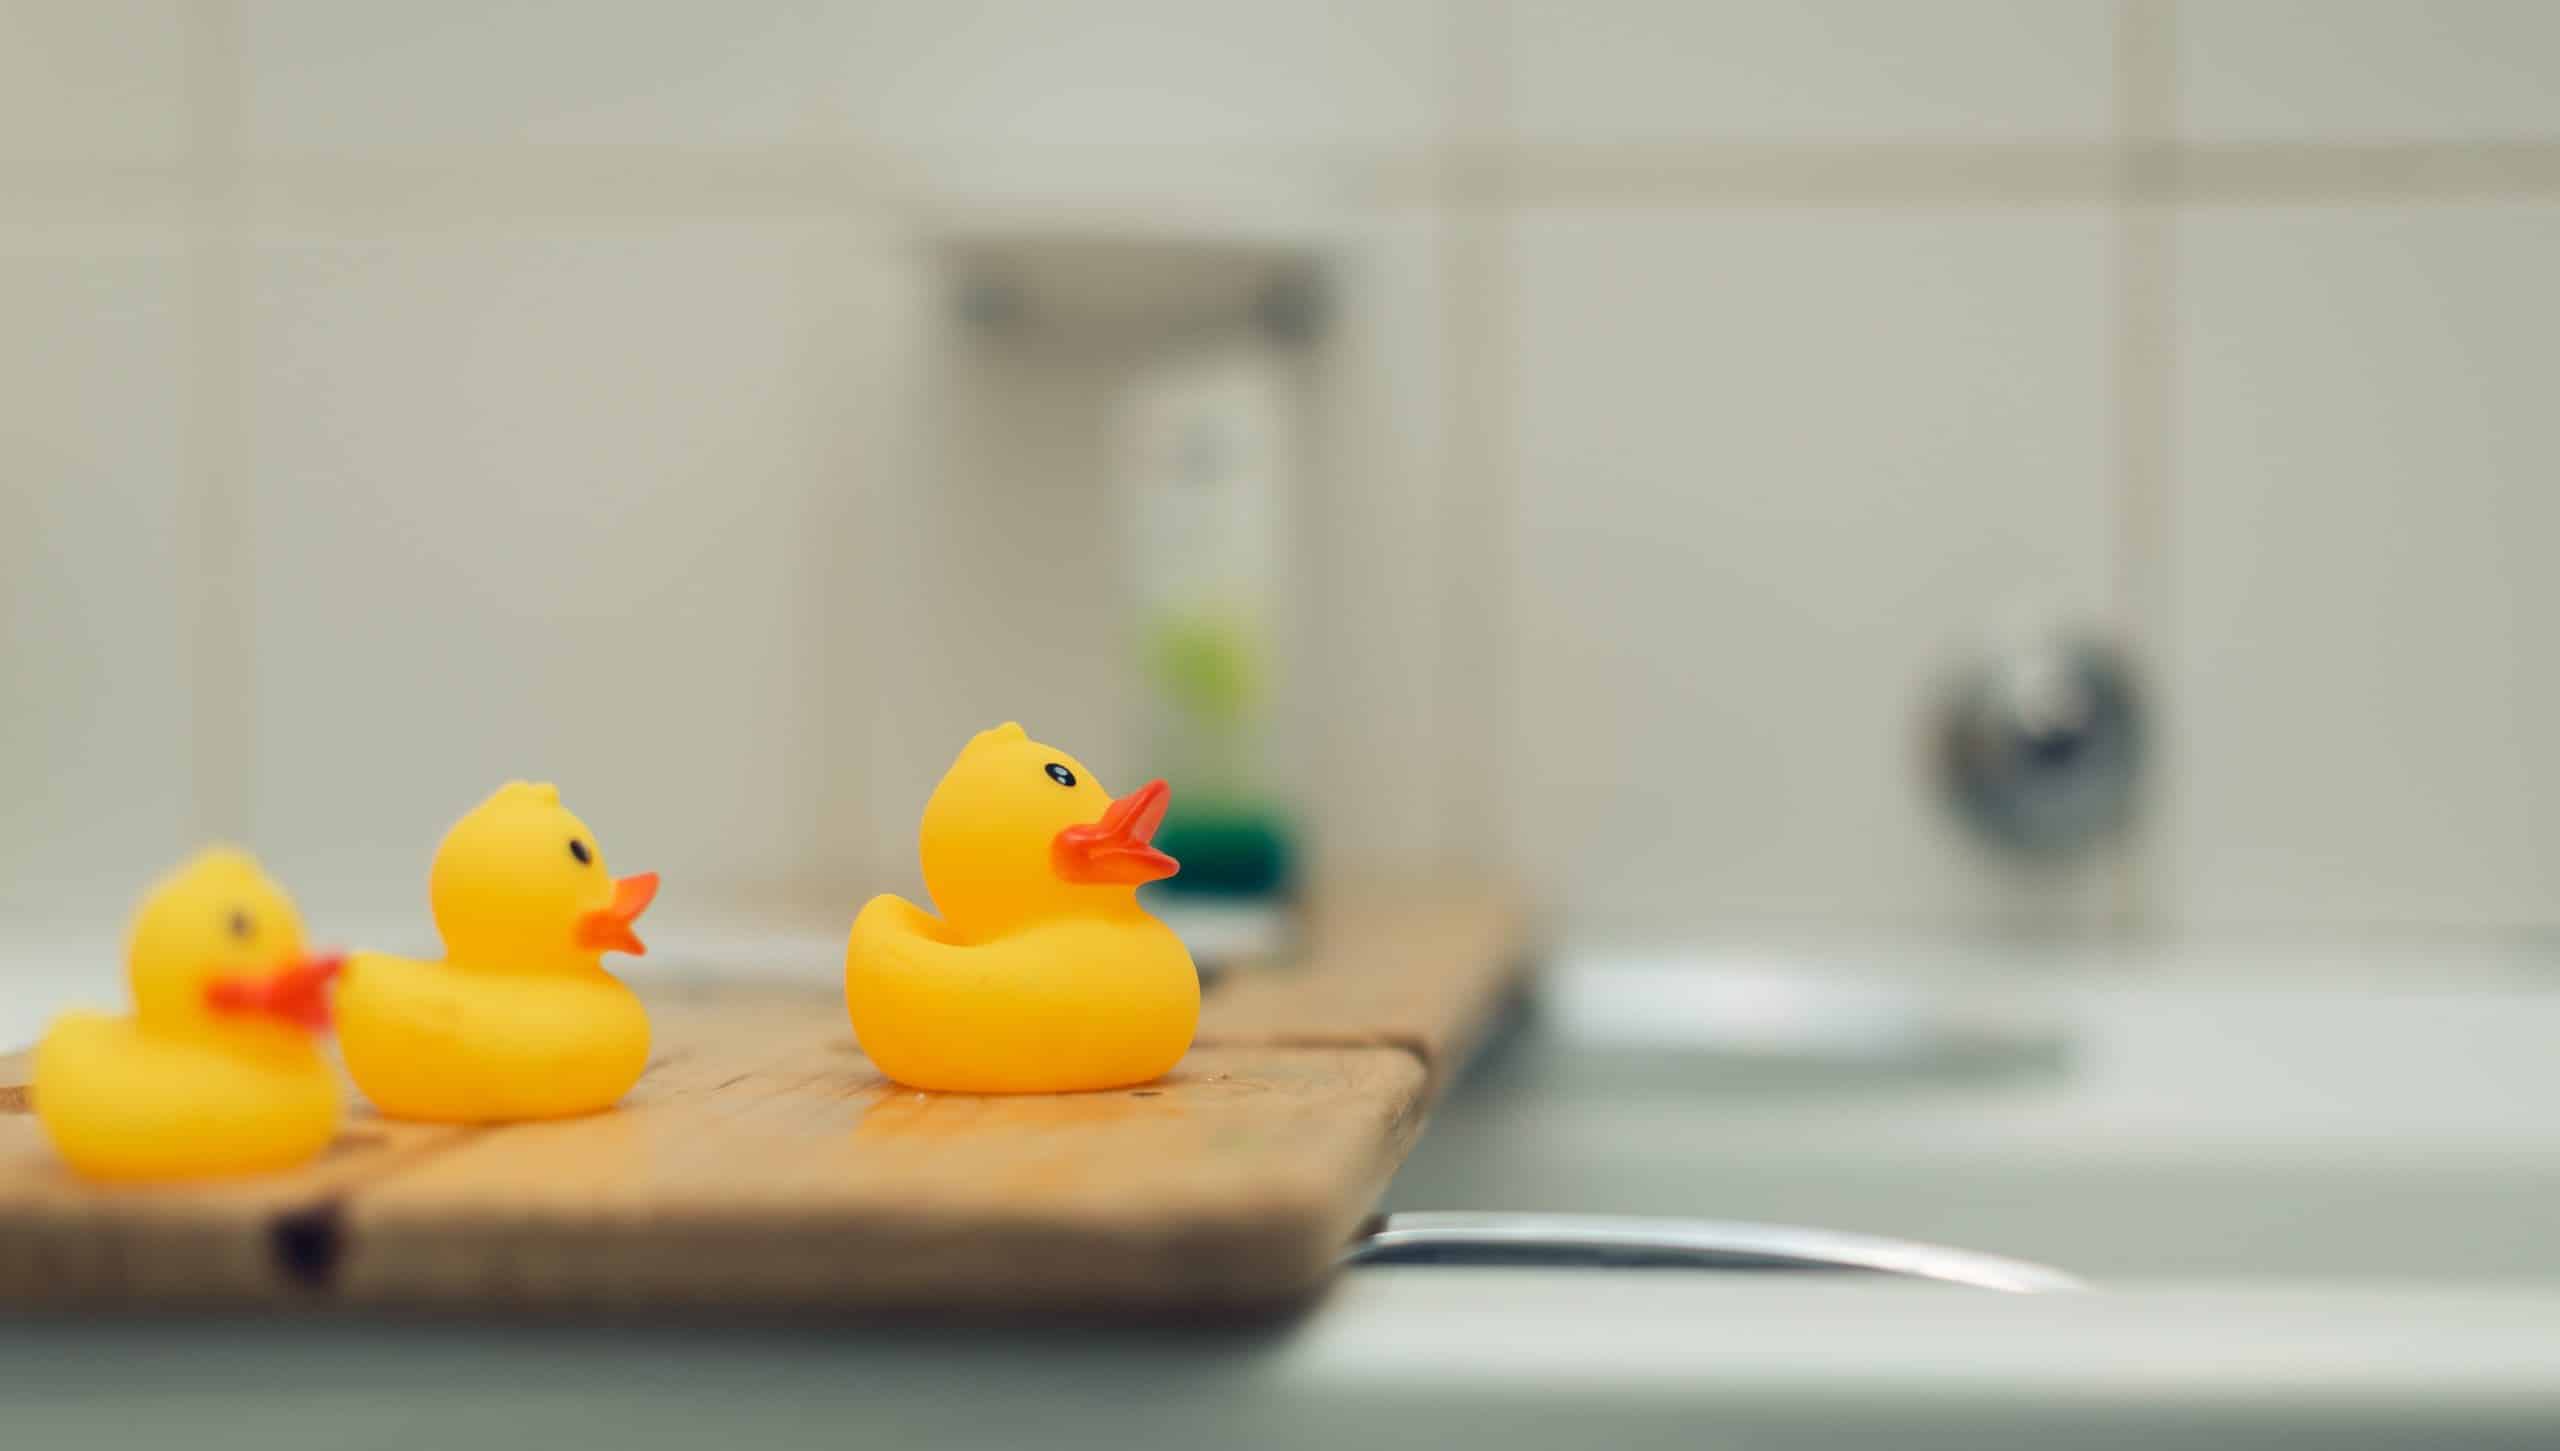 Trois canards en plastqiue dans une salle de bain, posés sur une baignoire